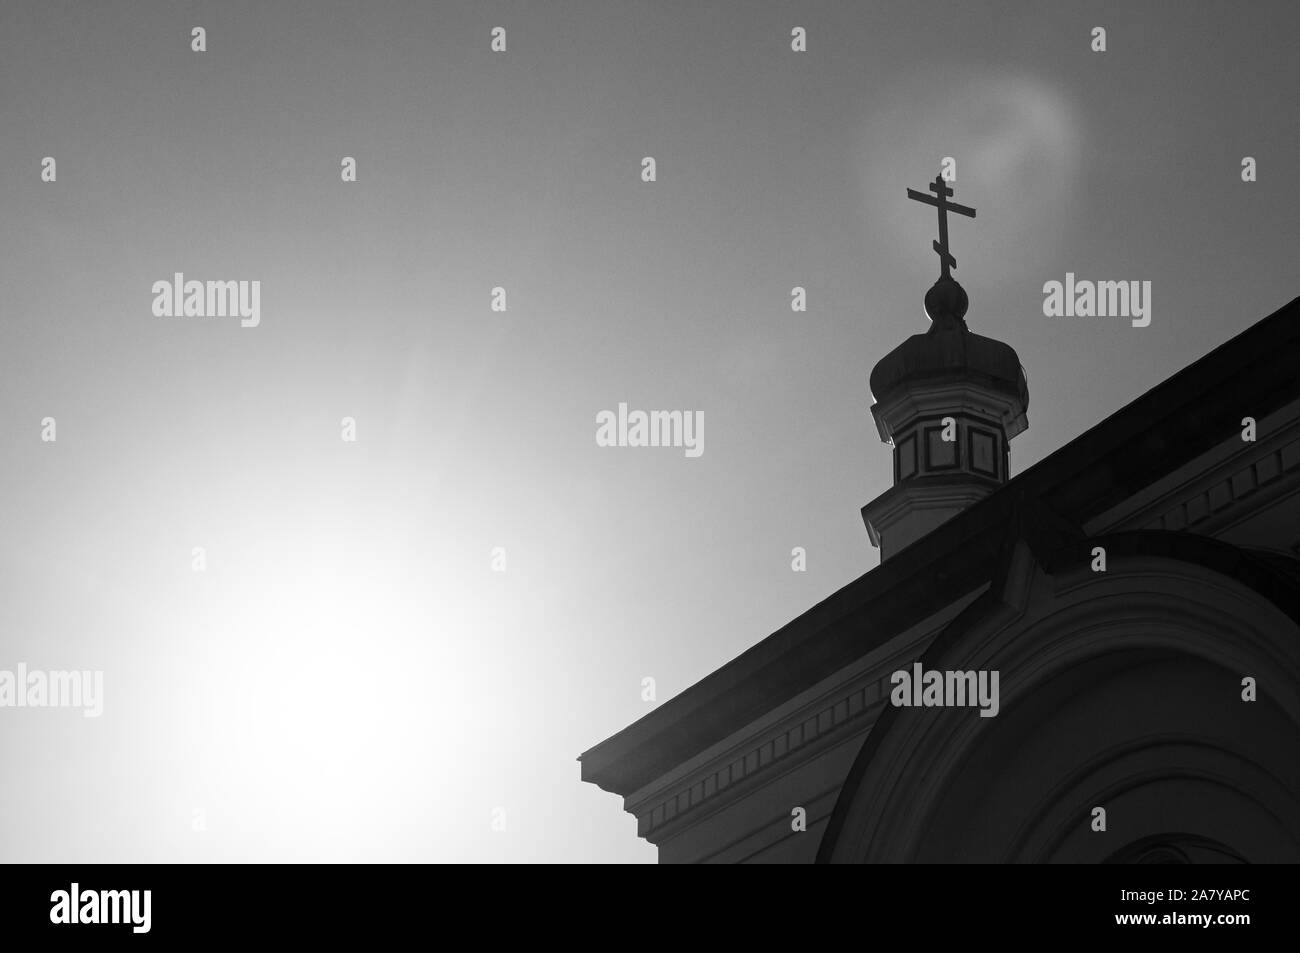 Hakodate Eglise Orthodoxe - Église orthodoxe russe d'ossature dômes en oignon tower en hiver sous un ciel clair. - Hakodate Motomachi, Hakkaido. Black et w Banque D'Images